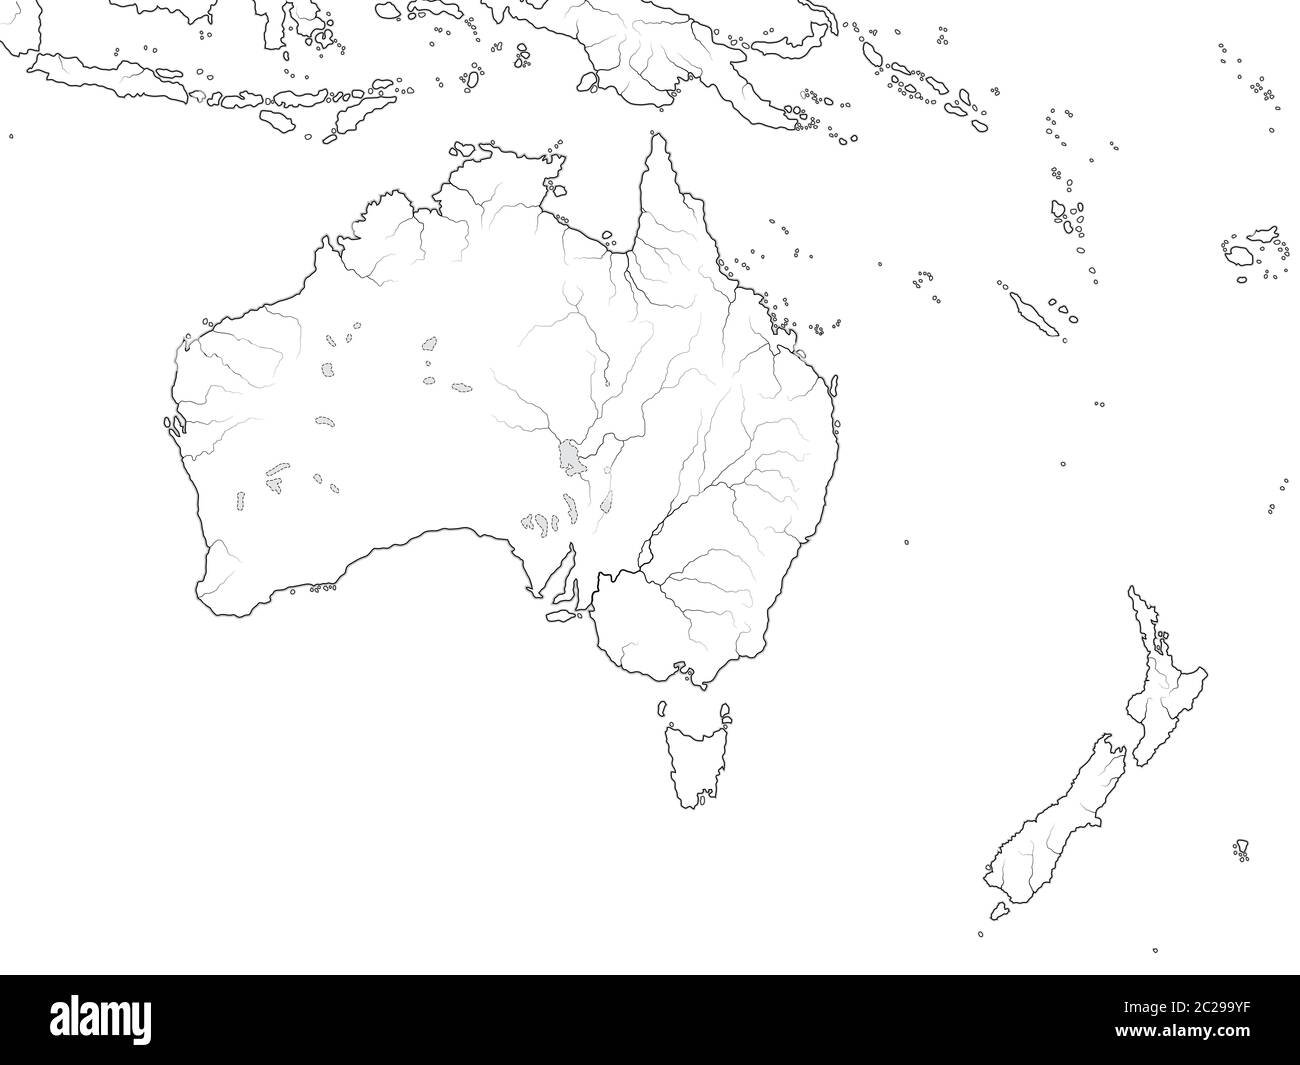 carte-du-monde-de-l-australie-continent-australie-nouvelle-z-lande